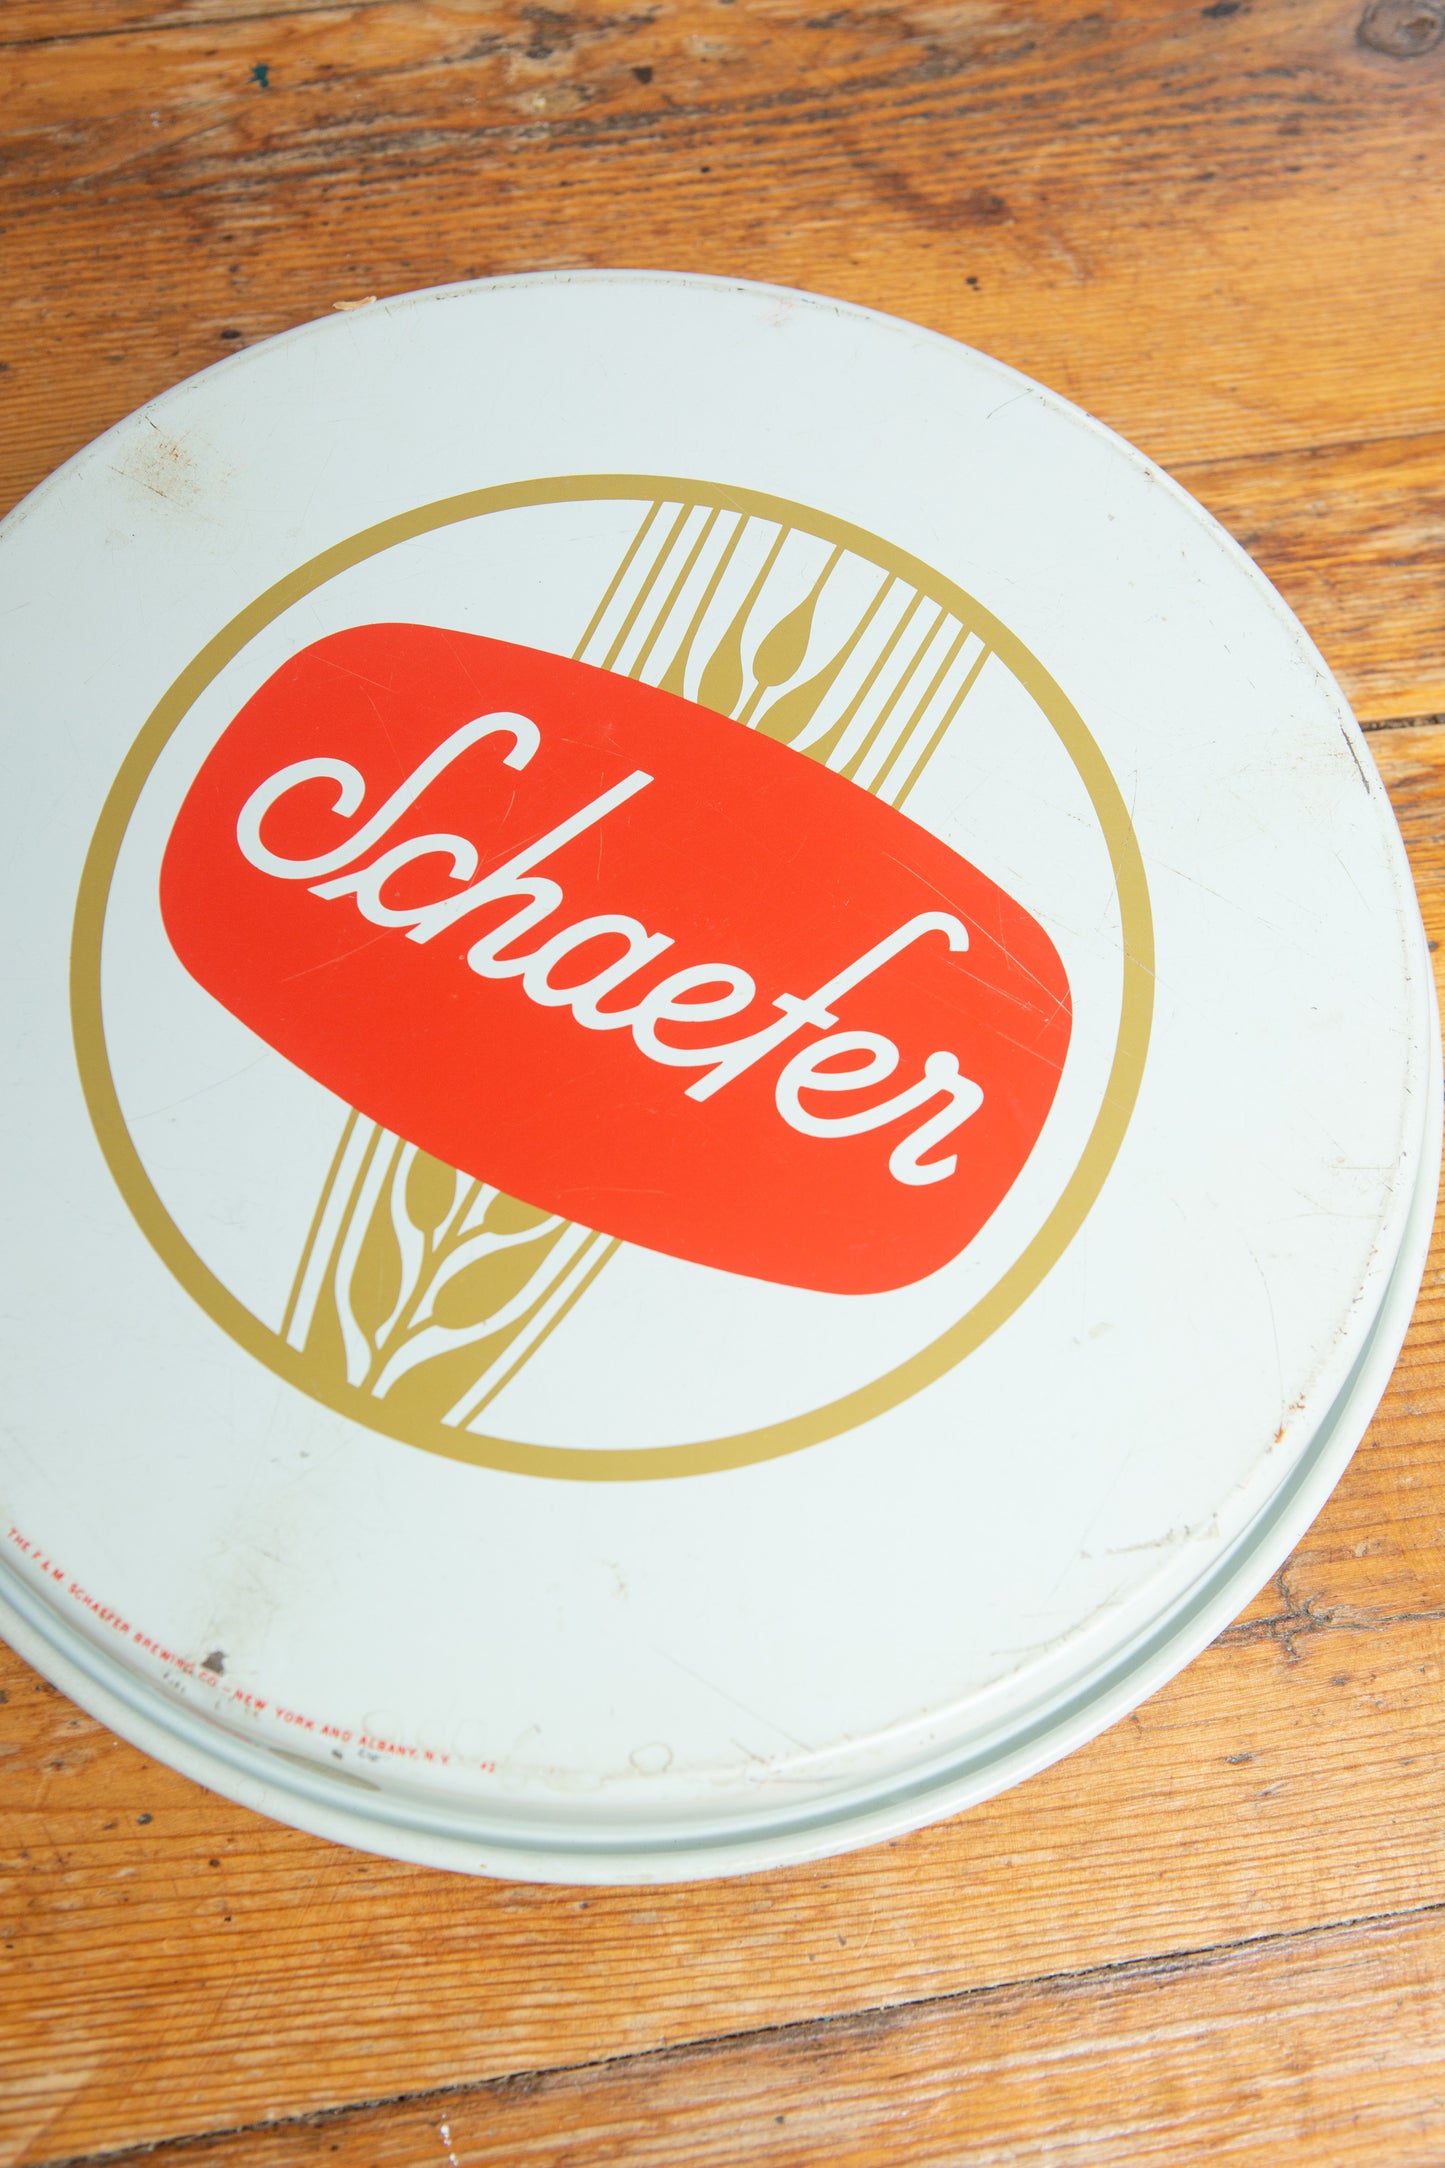 Schaefer Beer Beverage Tray